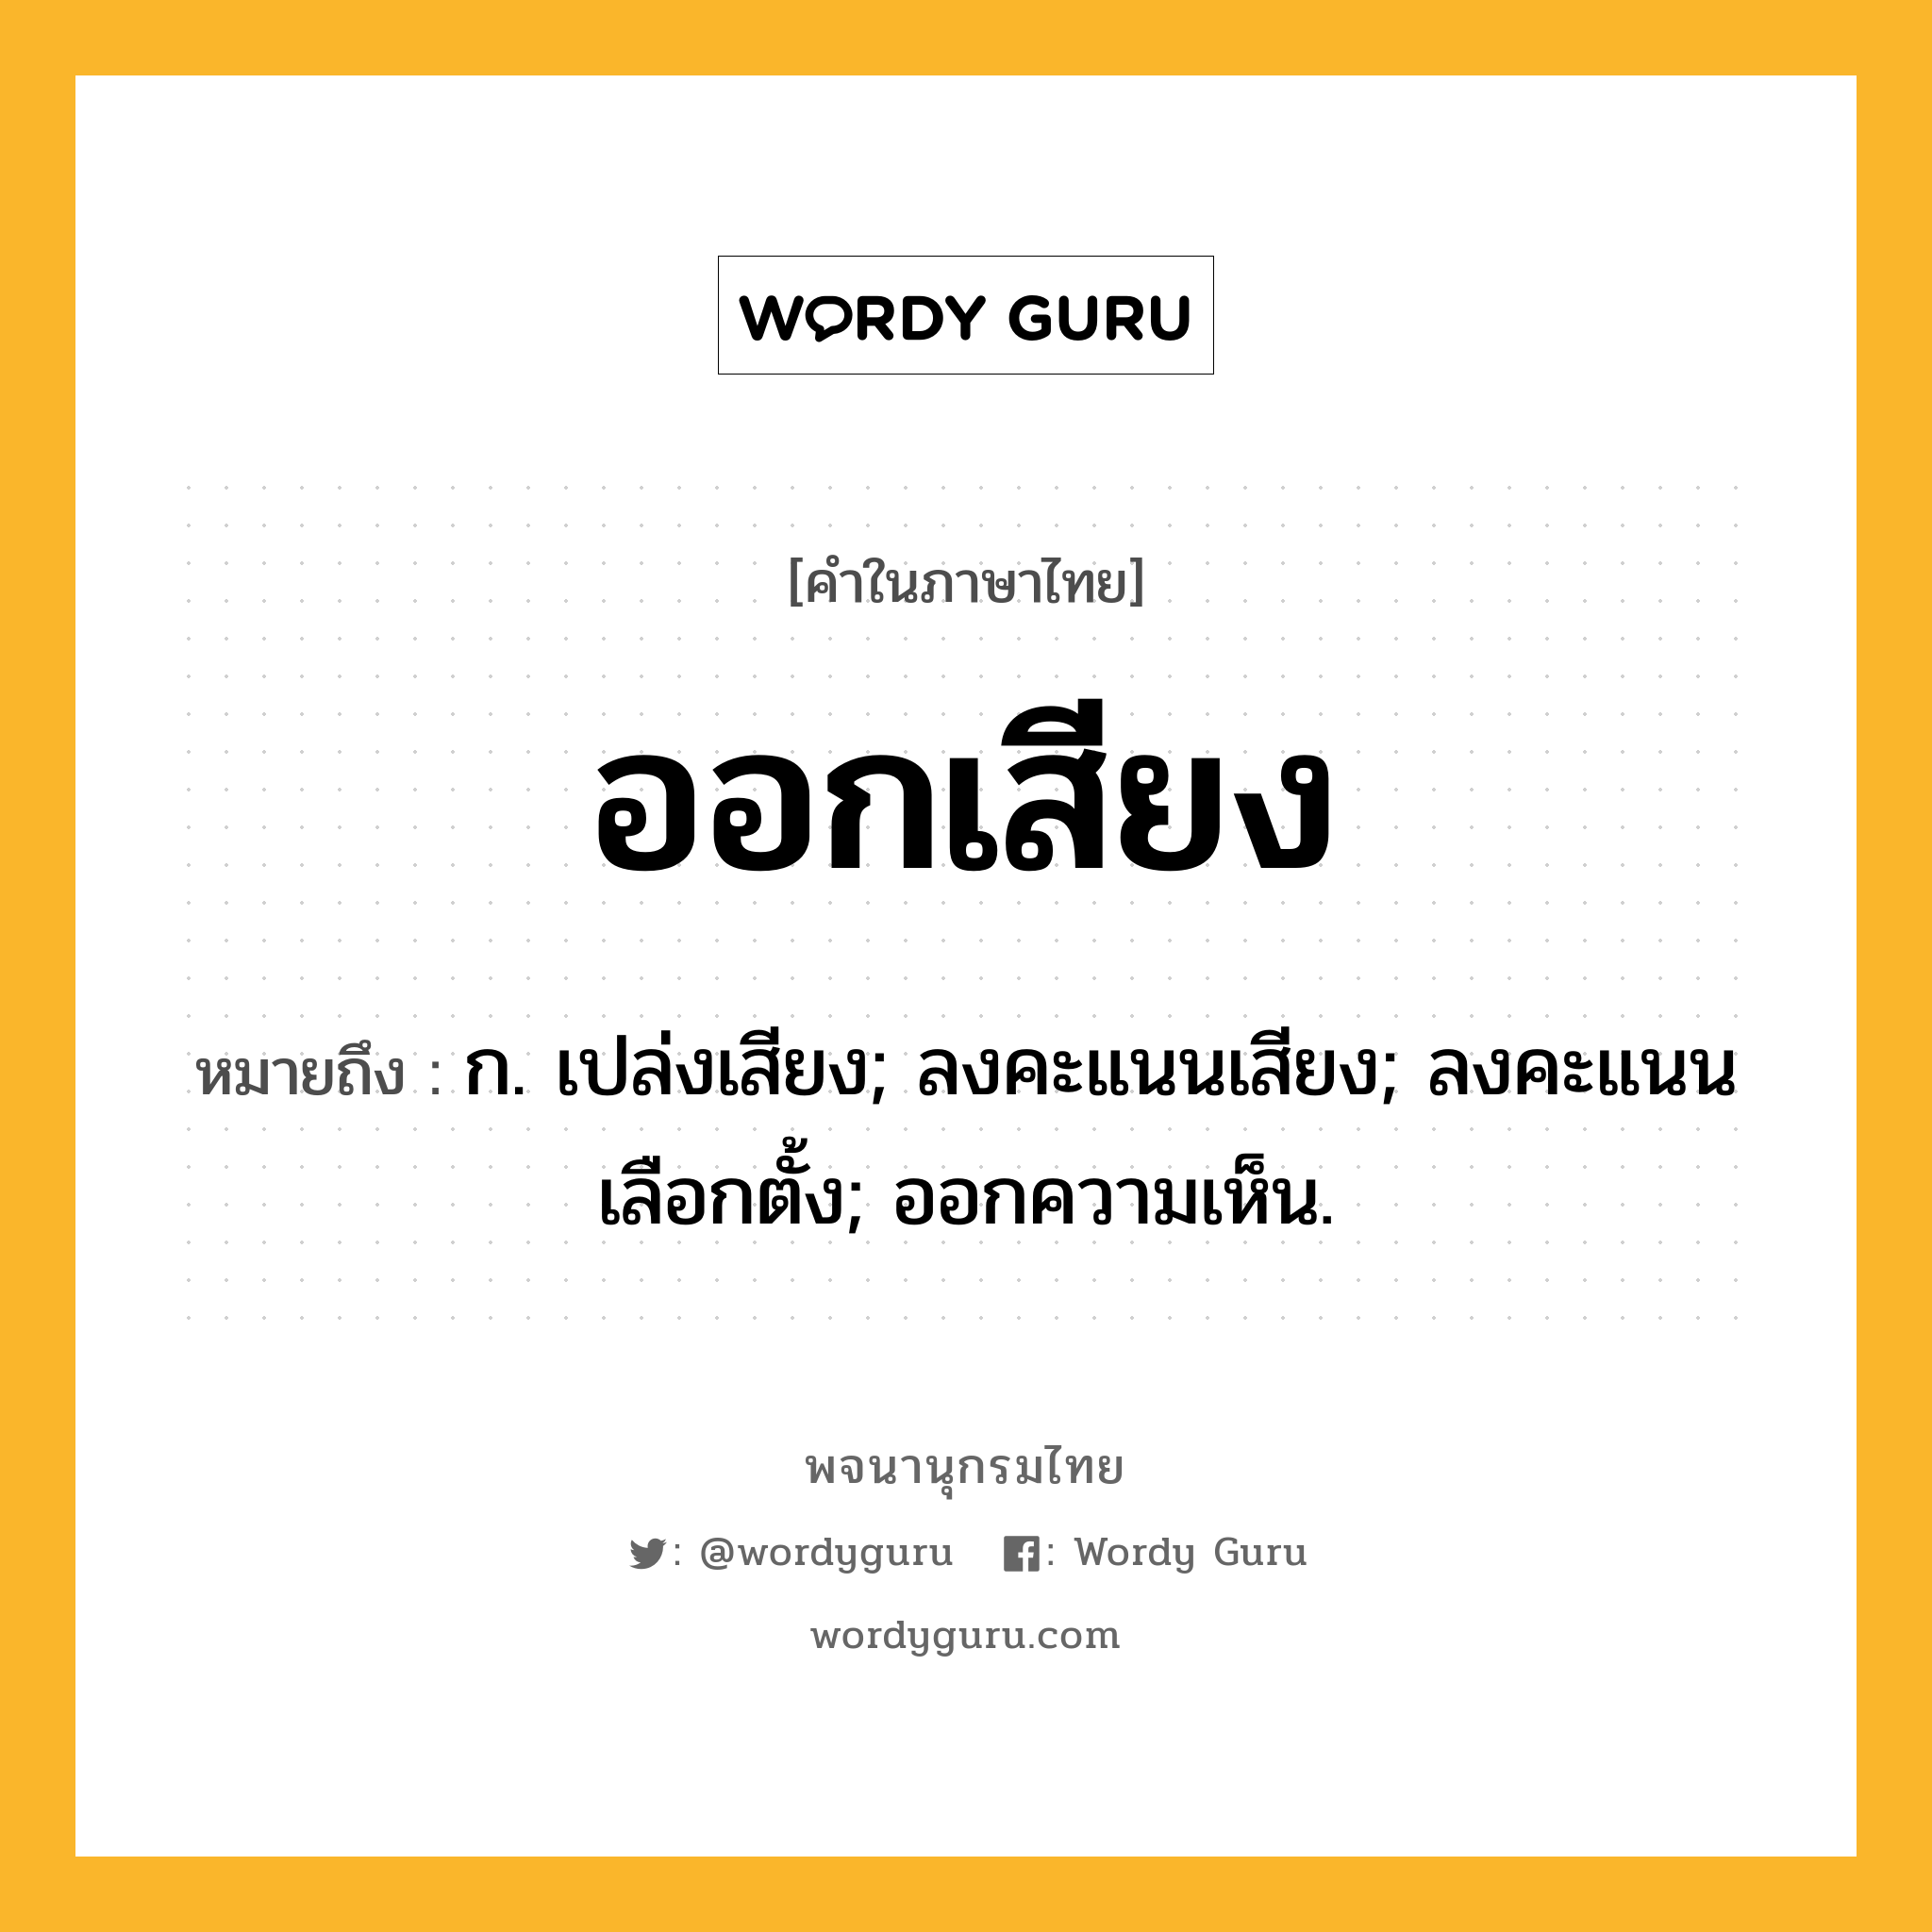 ออกเสียง หมายถึงอะไร?, คำในภาษาไทย ออกเสียง หมายถึง ก. เปล่งเสียง; ลงคะแนนเสียง; ลงคะแนนเลือกตั้ง; ออกความเห็น.